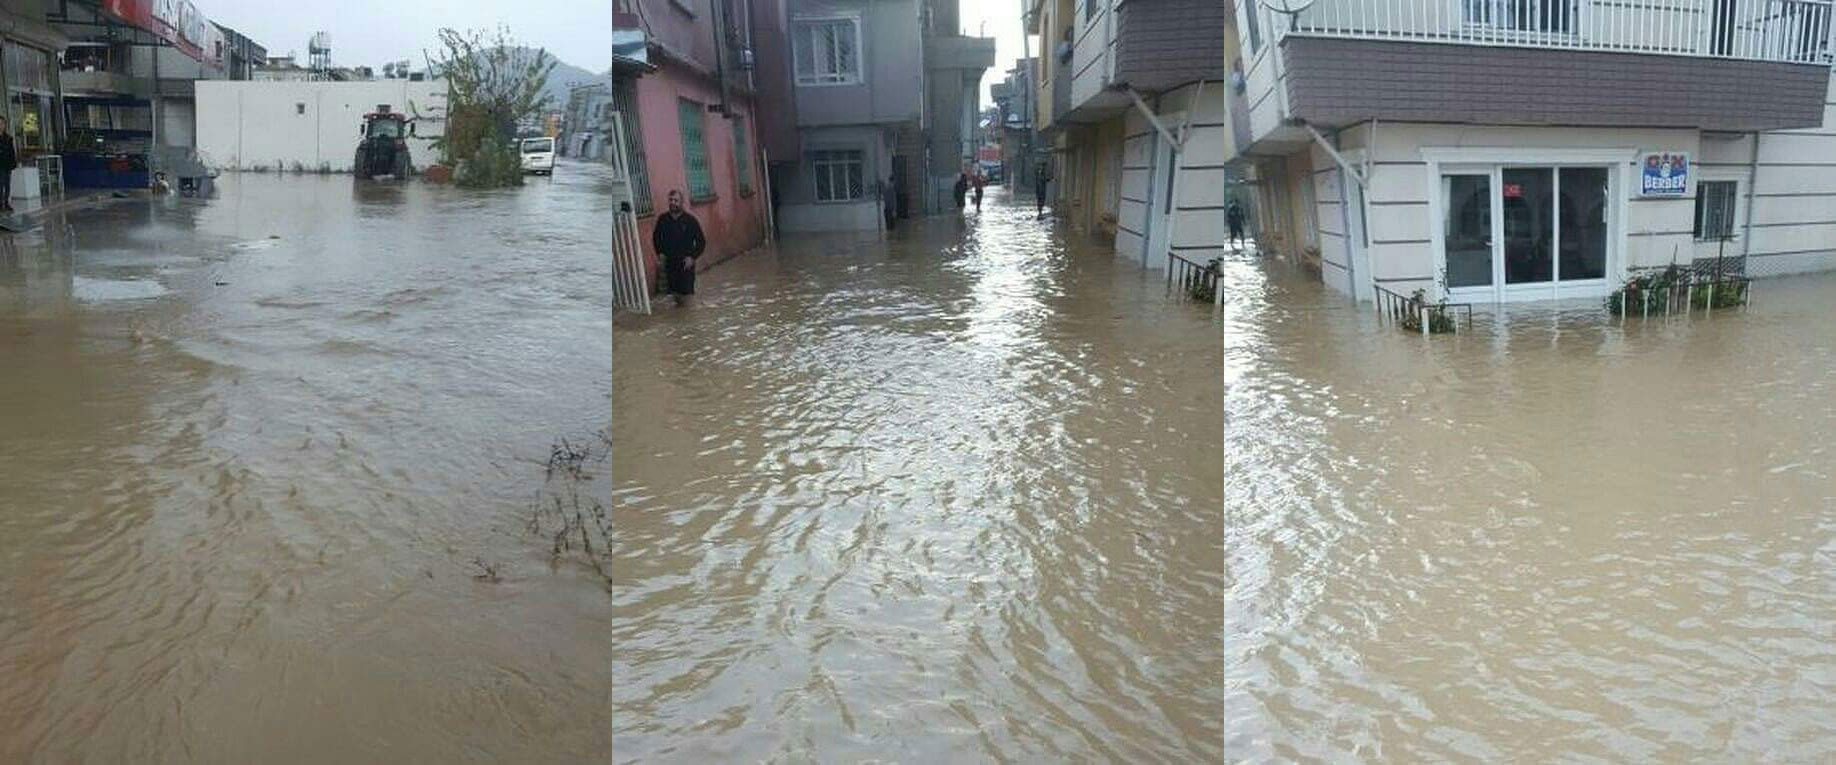 فيضانات في انطاكيا وتعطيل المدارس في سيواس .. والارصاد الجوية تحذر حتى يوم الجمعة … ثلوج وأمطار غزيرة